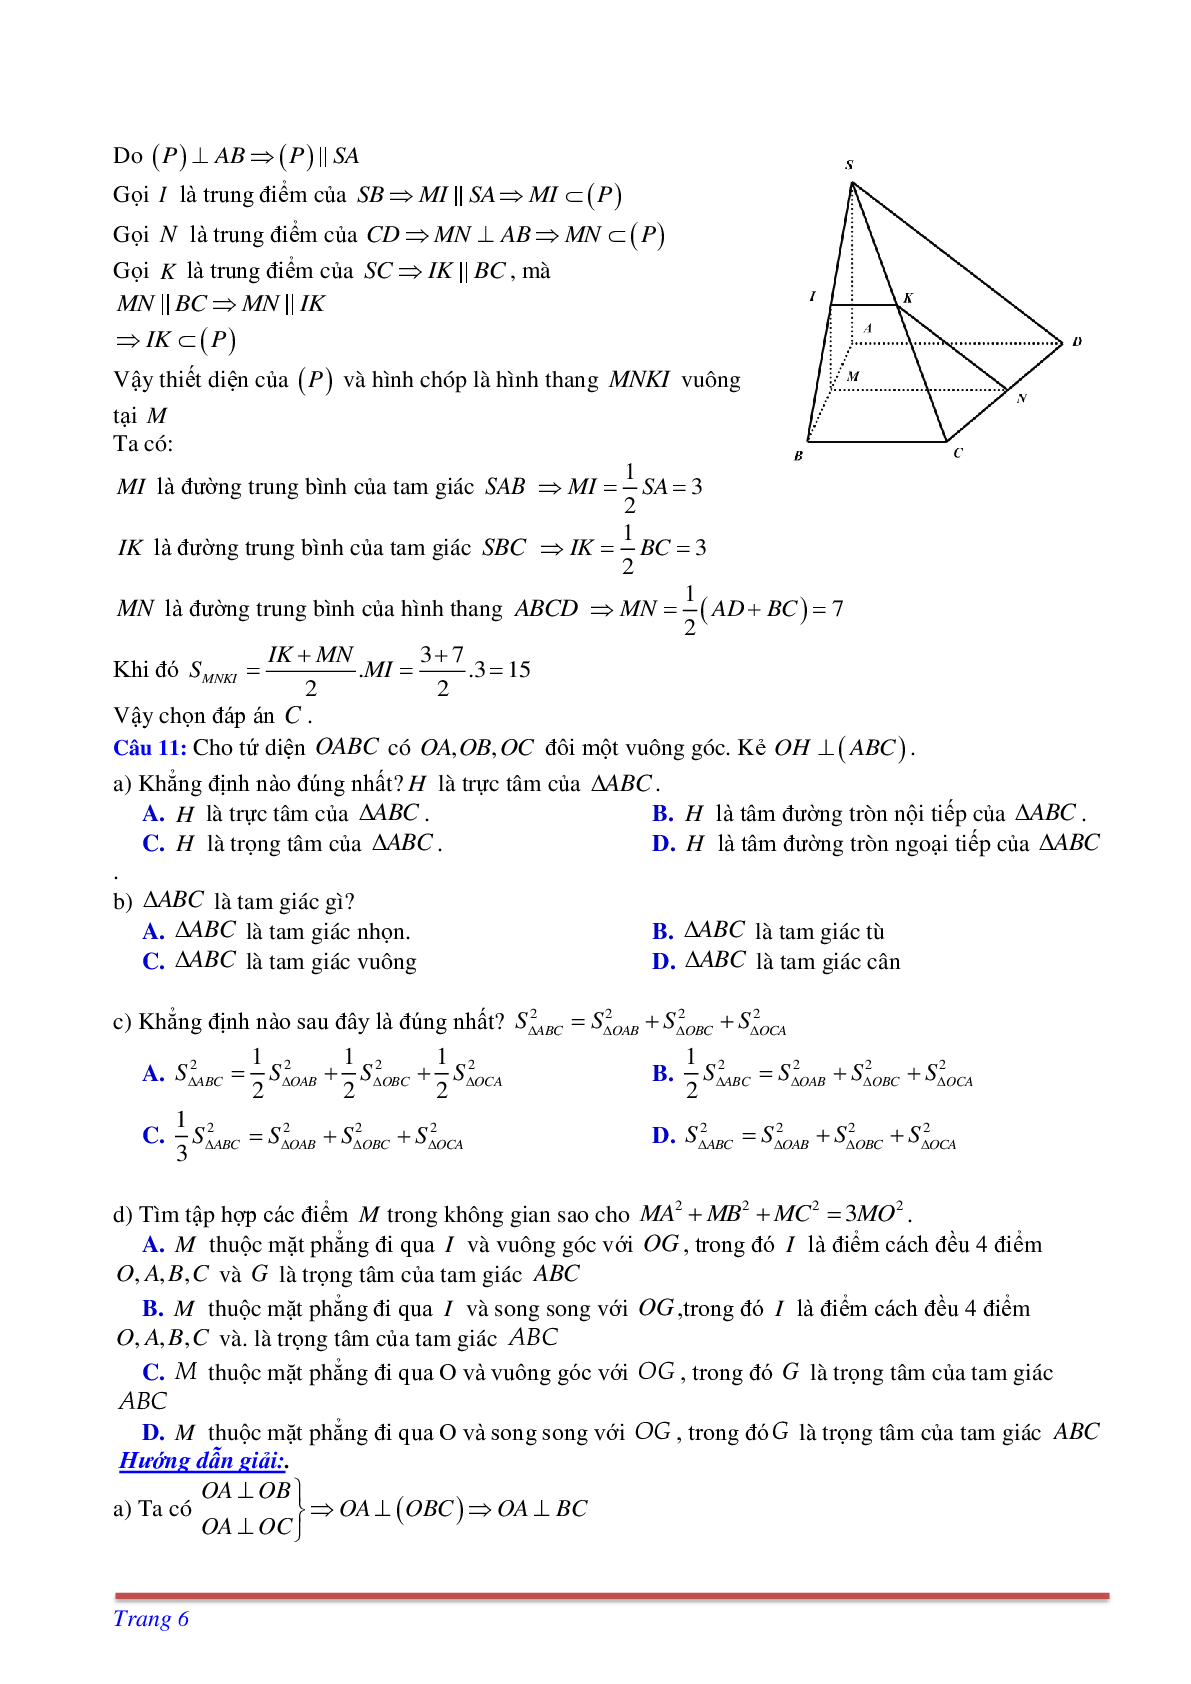 Phương pháp giải và bài tập về Cách tìm thiết diện liên quan đến vuông góc có đáp án (trang 6)